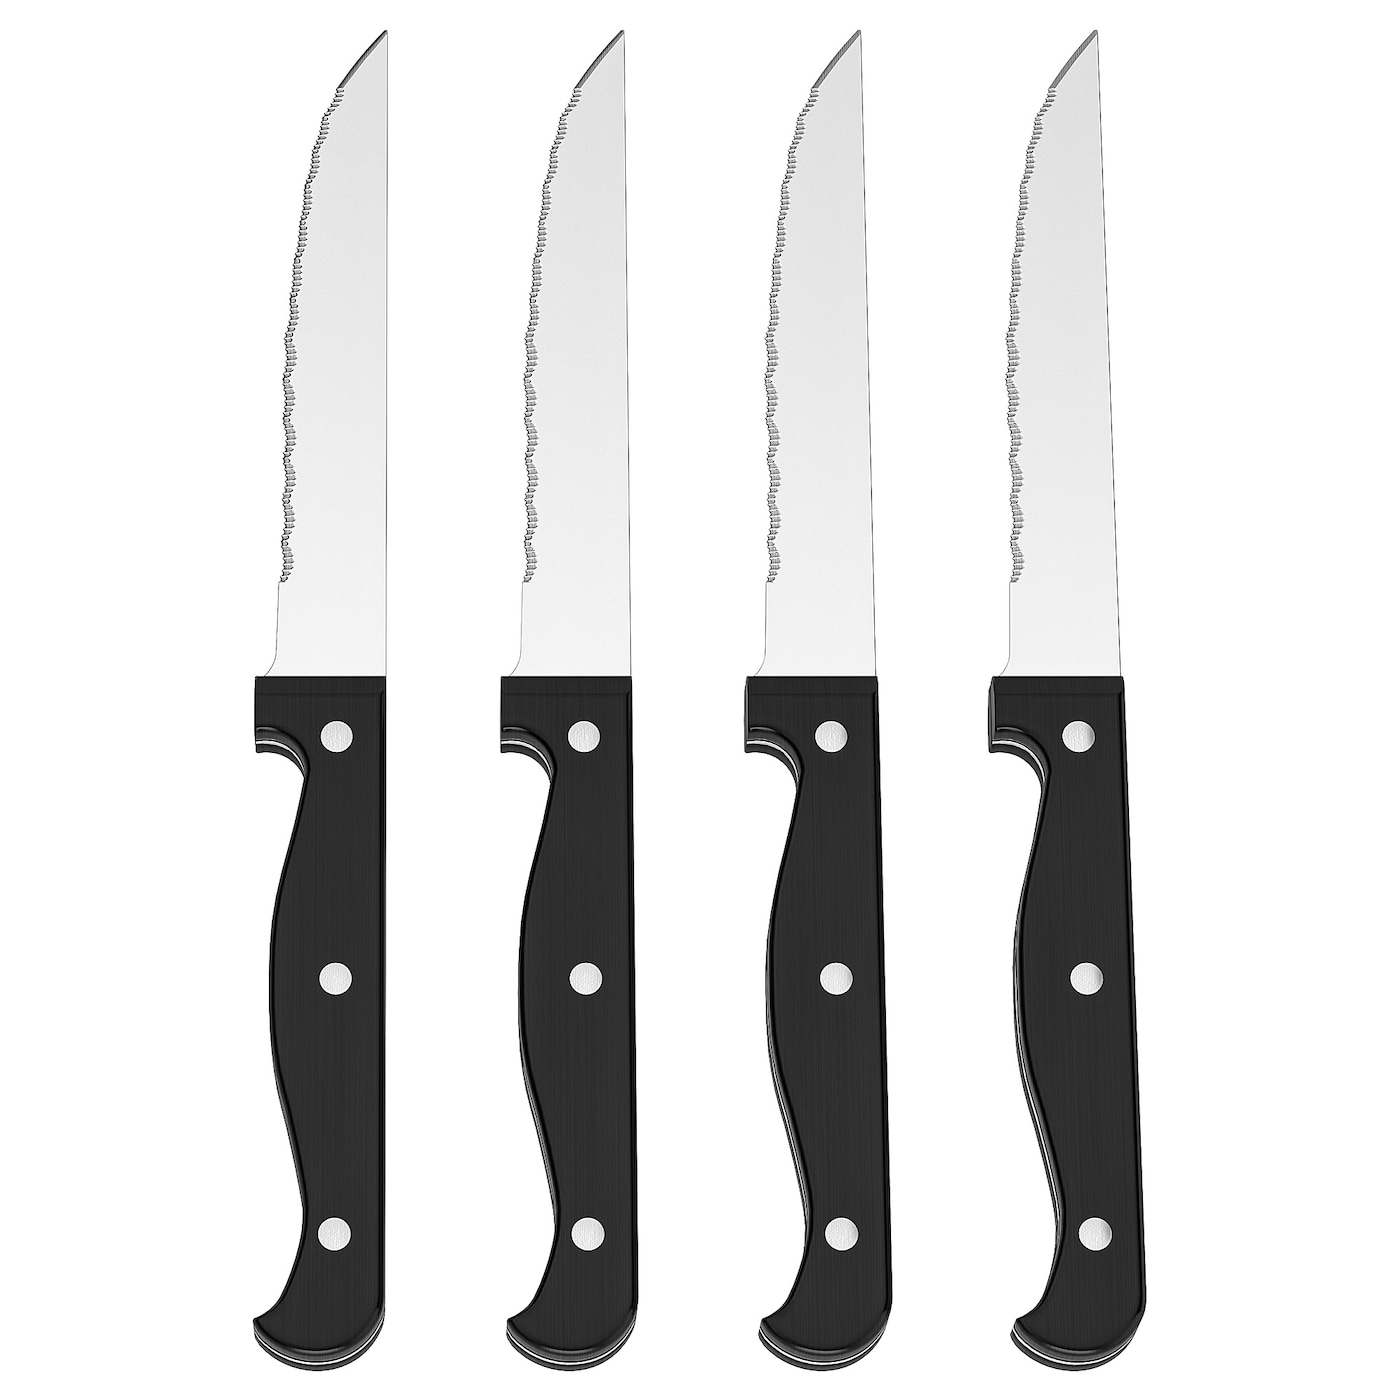 SNITTA СНИТТА Нож, черный, 22 см IKEA нож atlantis 24708 sk 11см для стейка